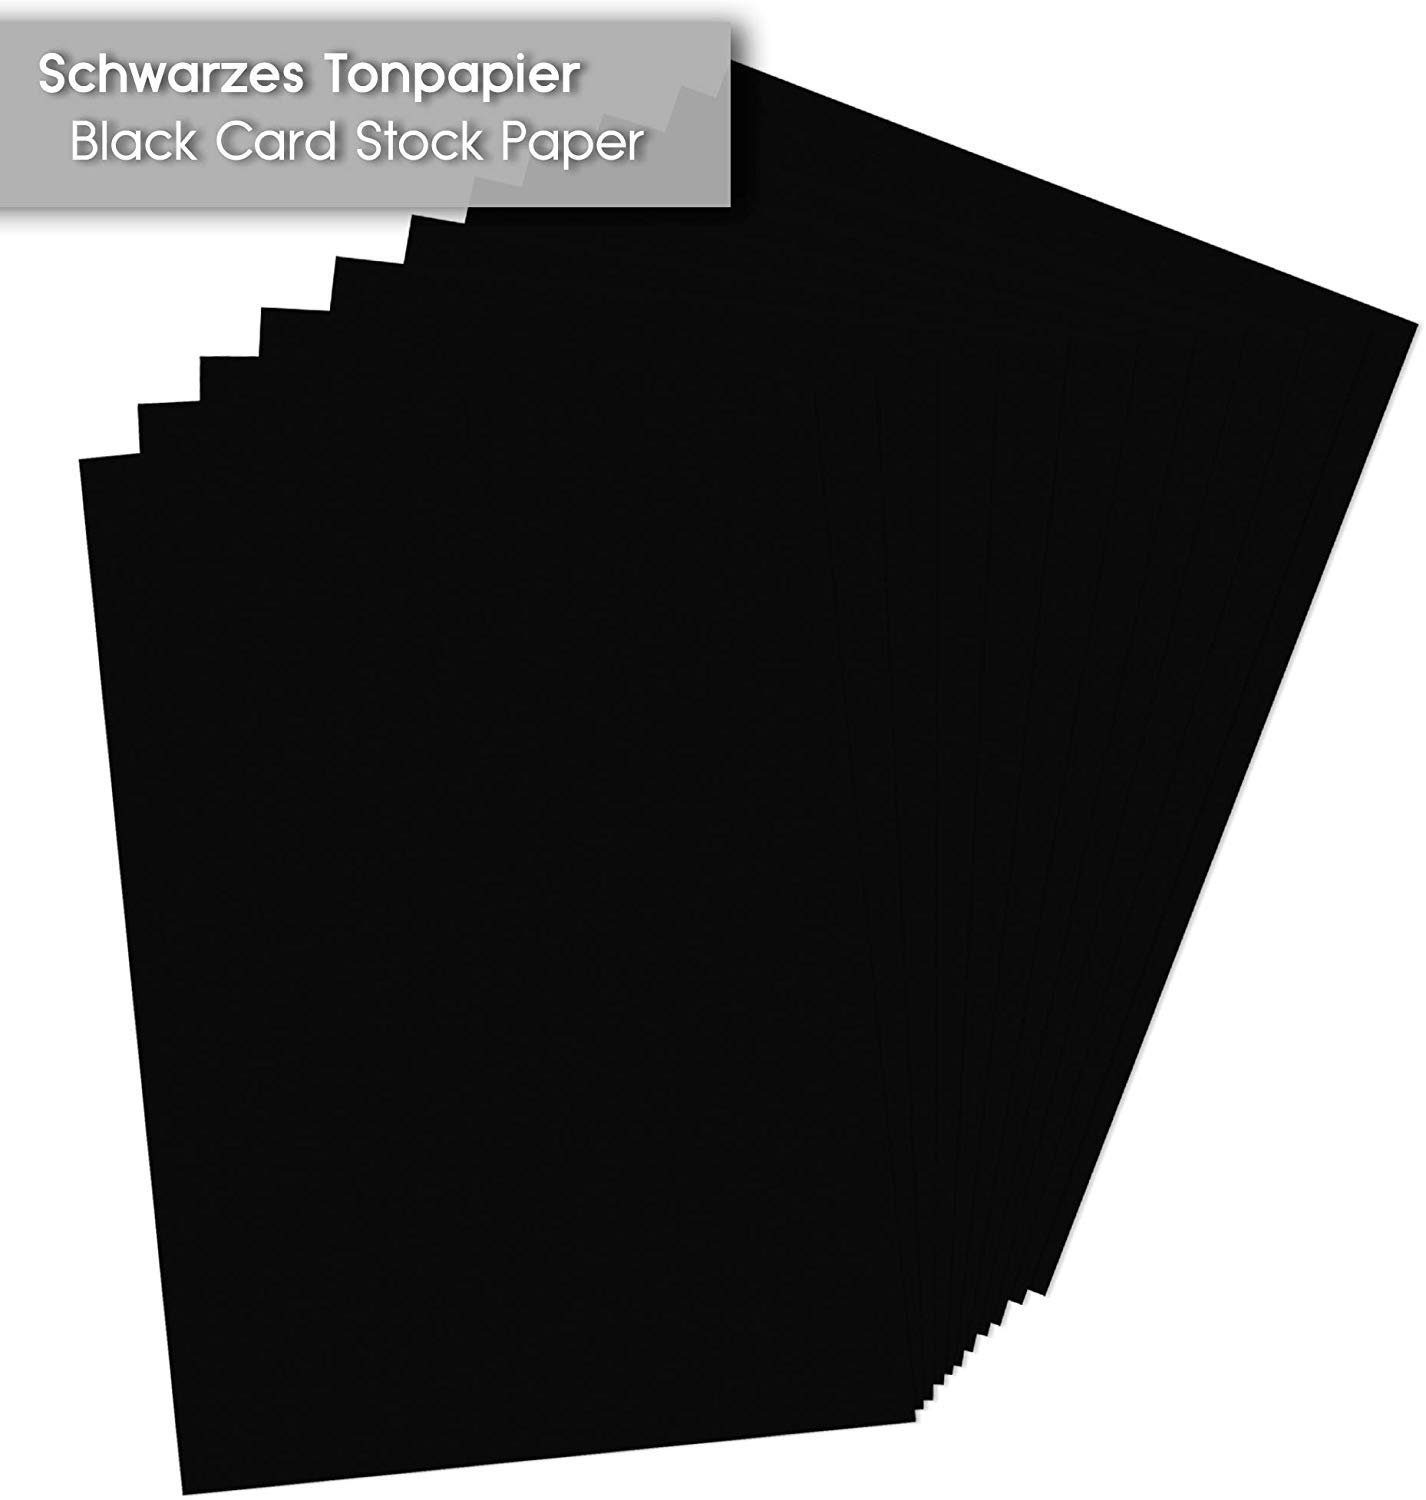 Tritart Blatt A3 Tonpapier Aquarellpapier Schwarzes 130g/m², 56